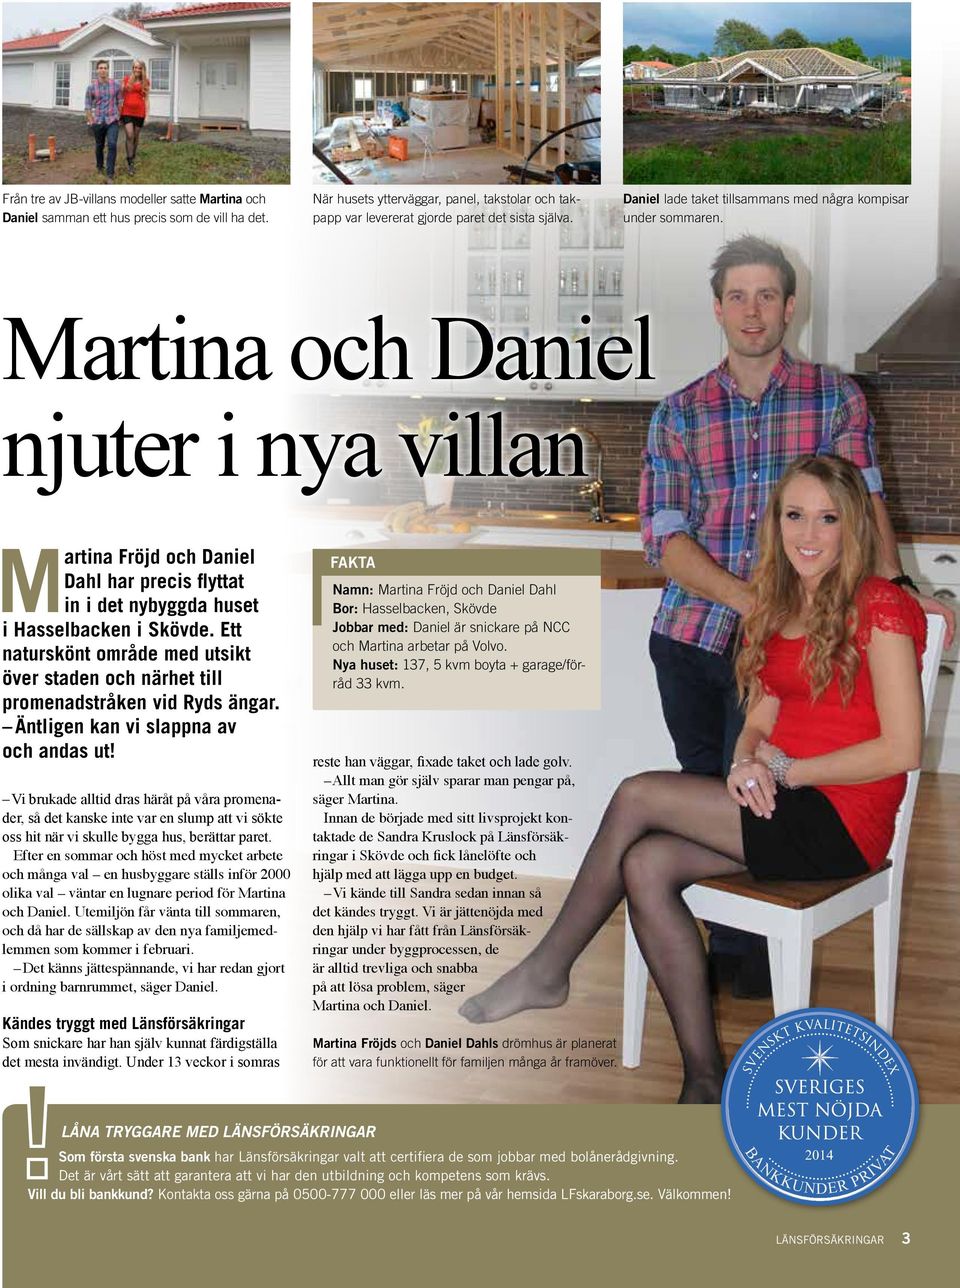 Martina och Daniel njuter i nya villan Martina Fröjd och Daniel Dahl har precis flyttat in i det nybyggda huset i Hasselbacken i Skövde.